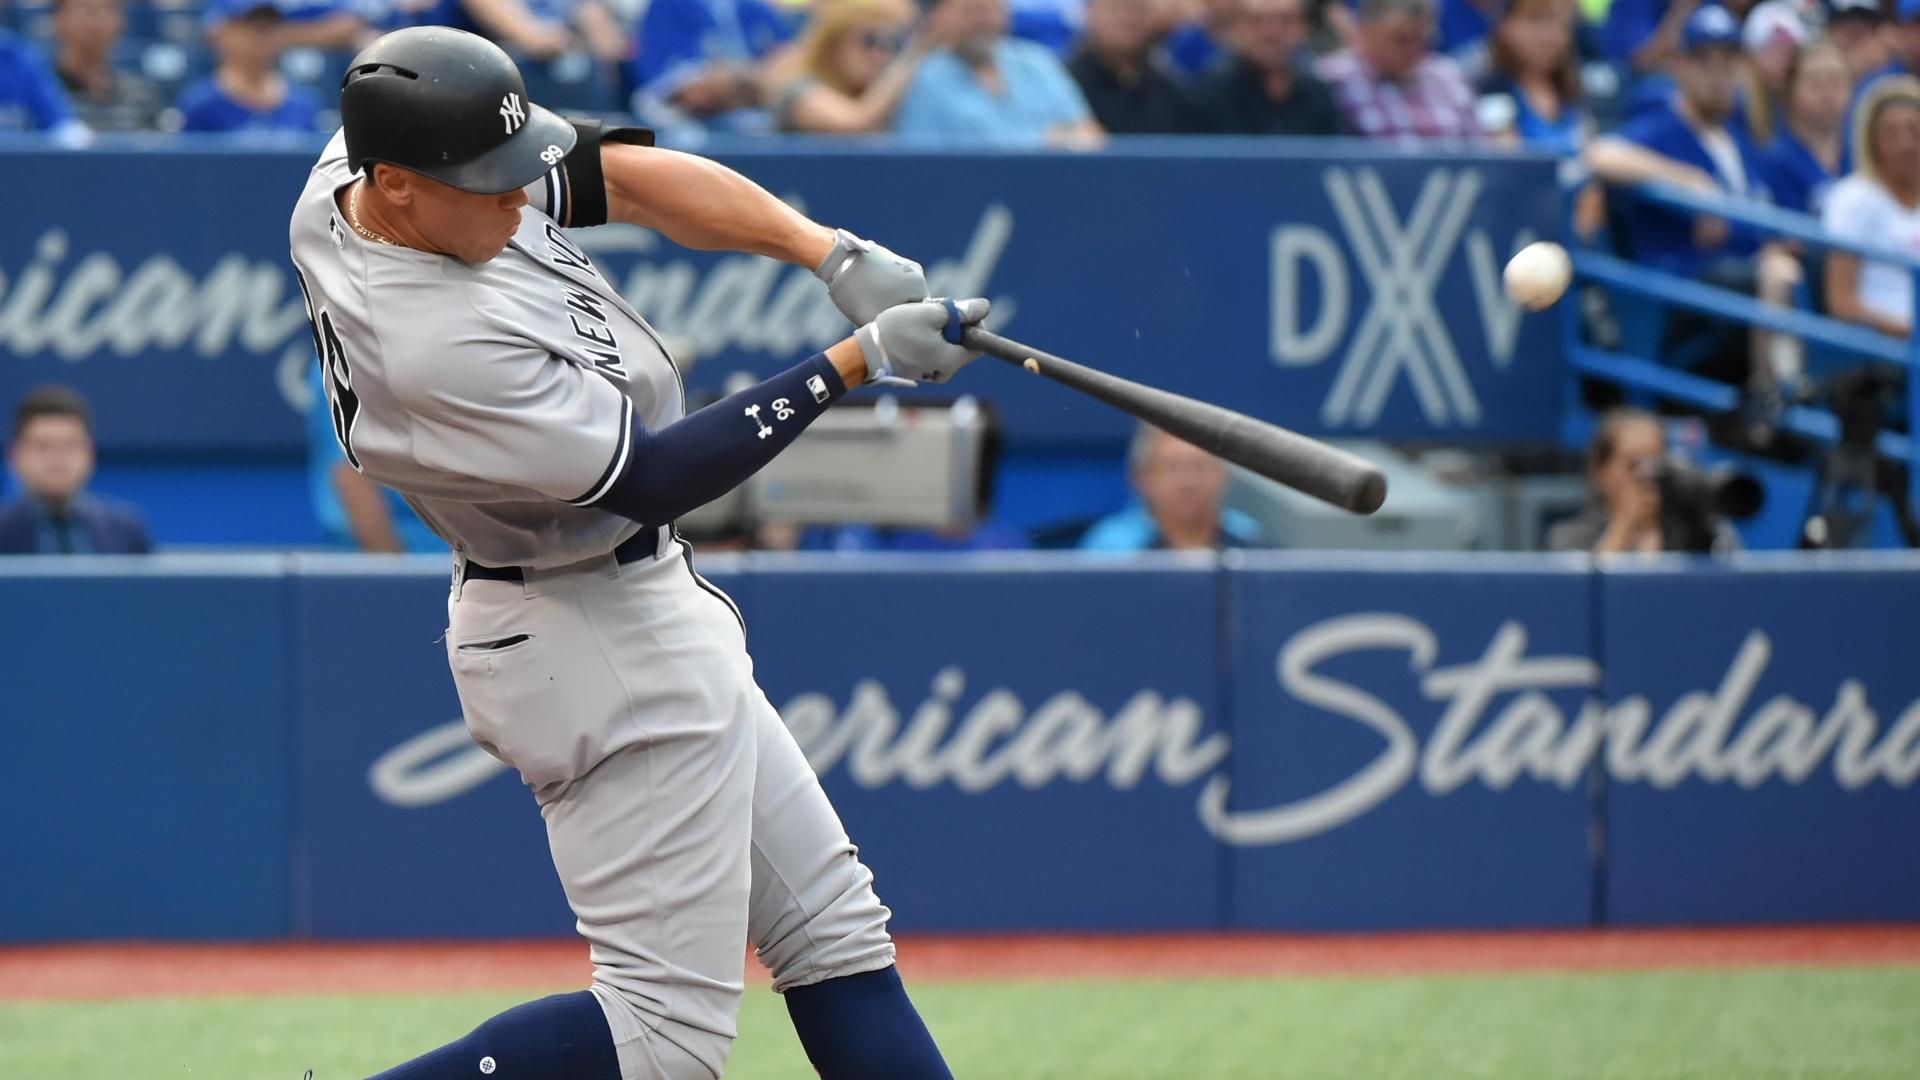 Yankees' Aaron Judge tops MLB jersey sales for third consecutive season 